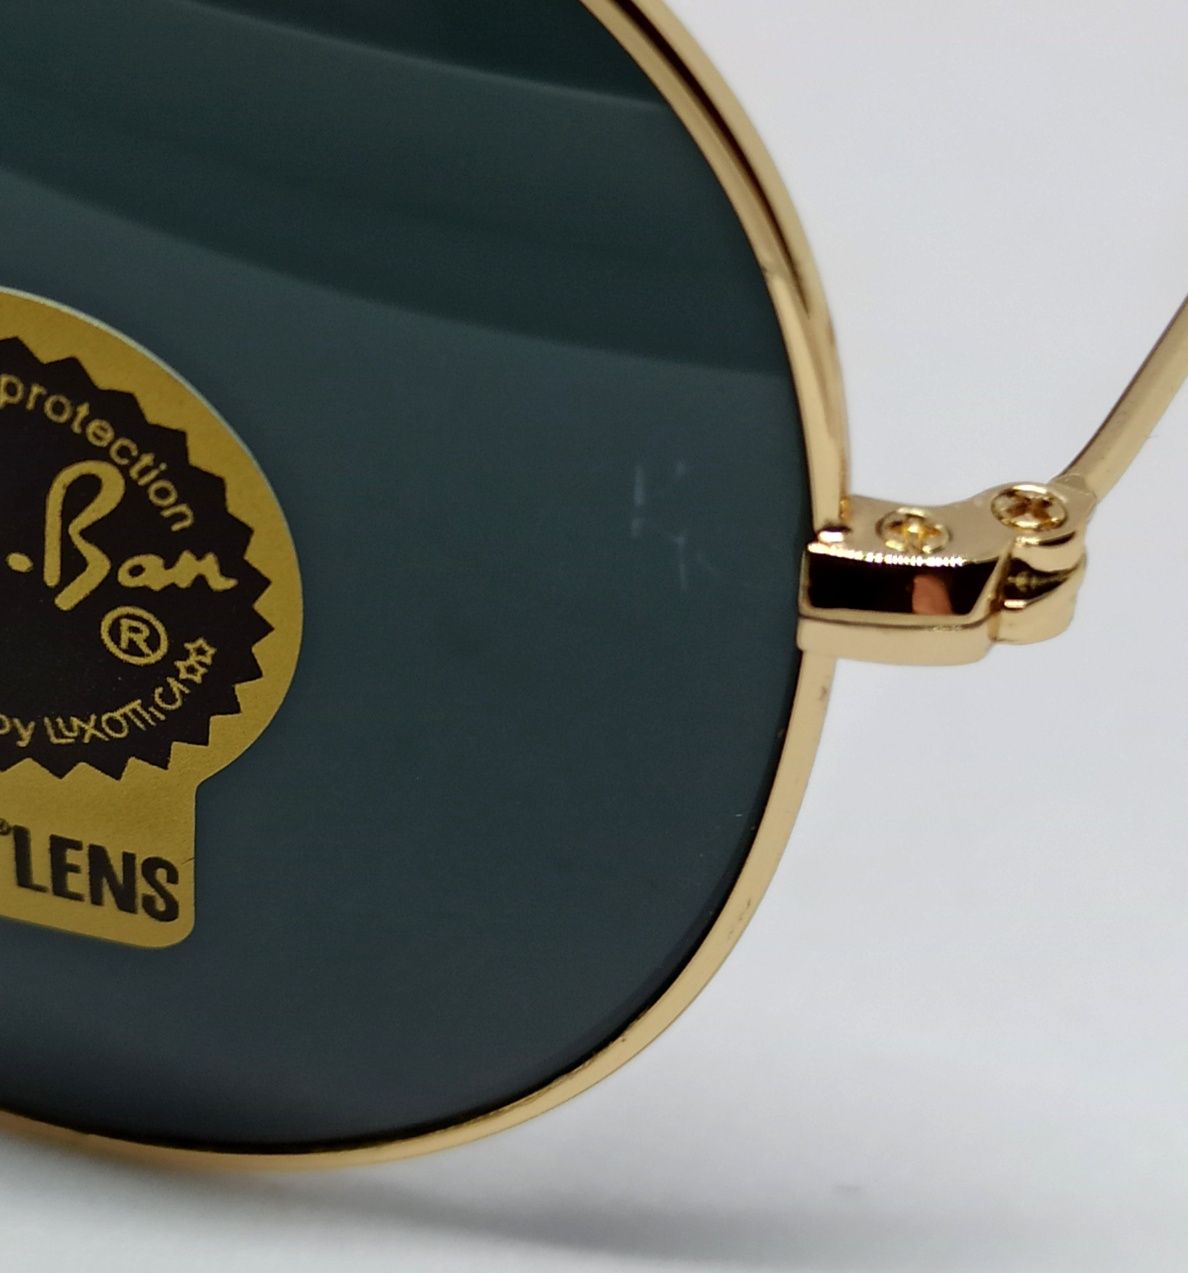 Ray Ban Aviator 58 очки капли черные в золотом металле линзы стекло